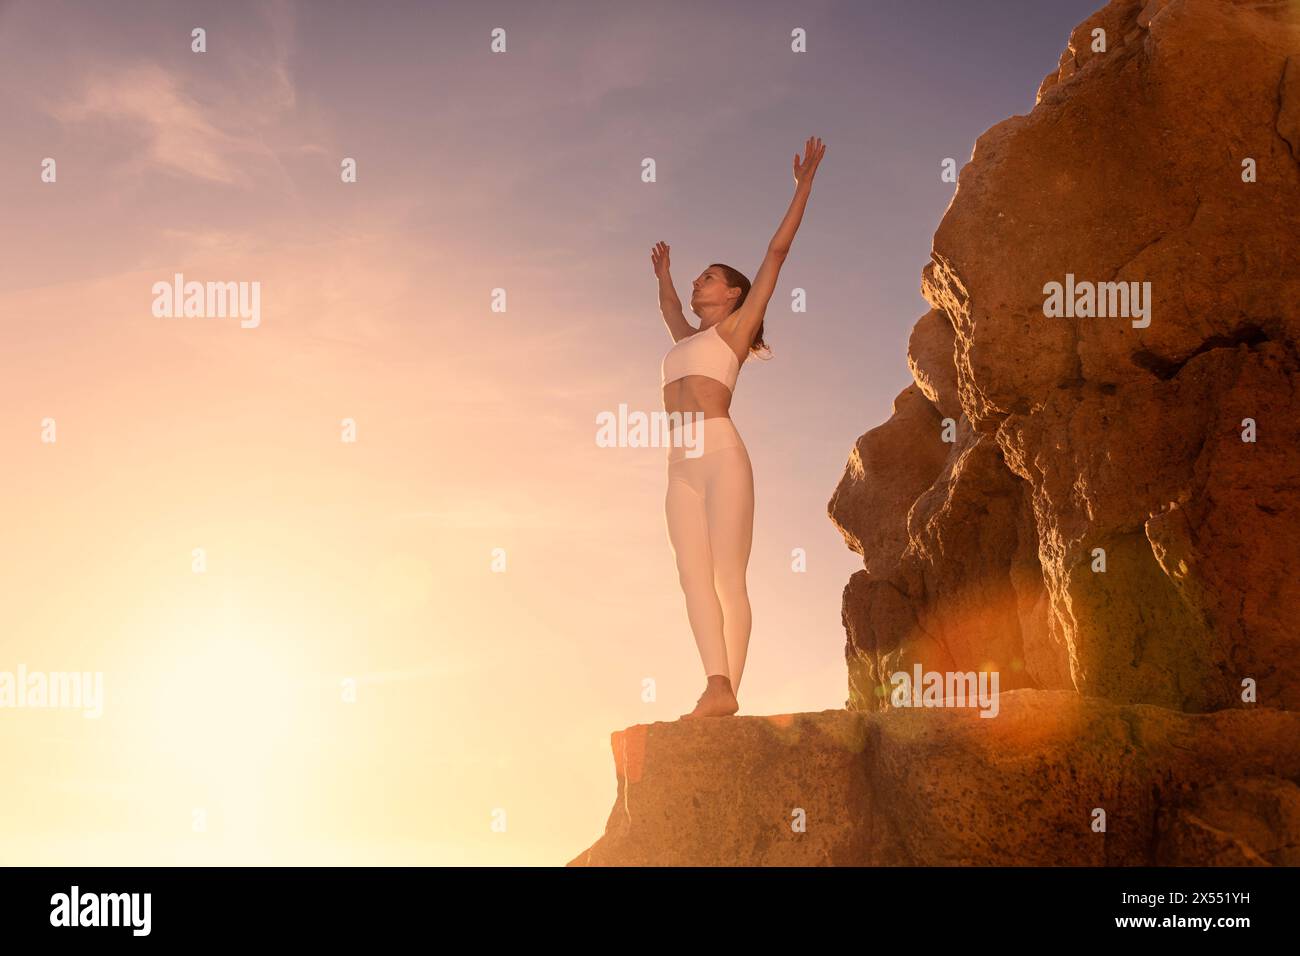 Femme avec les bras grands ouverts profitant du soleil, debout sur la roche avec les mains vers le haut se détendre ou voyage heureux ou de liberté. Concept de succès et gagnant Banque D'Images